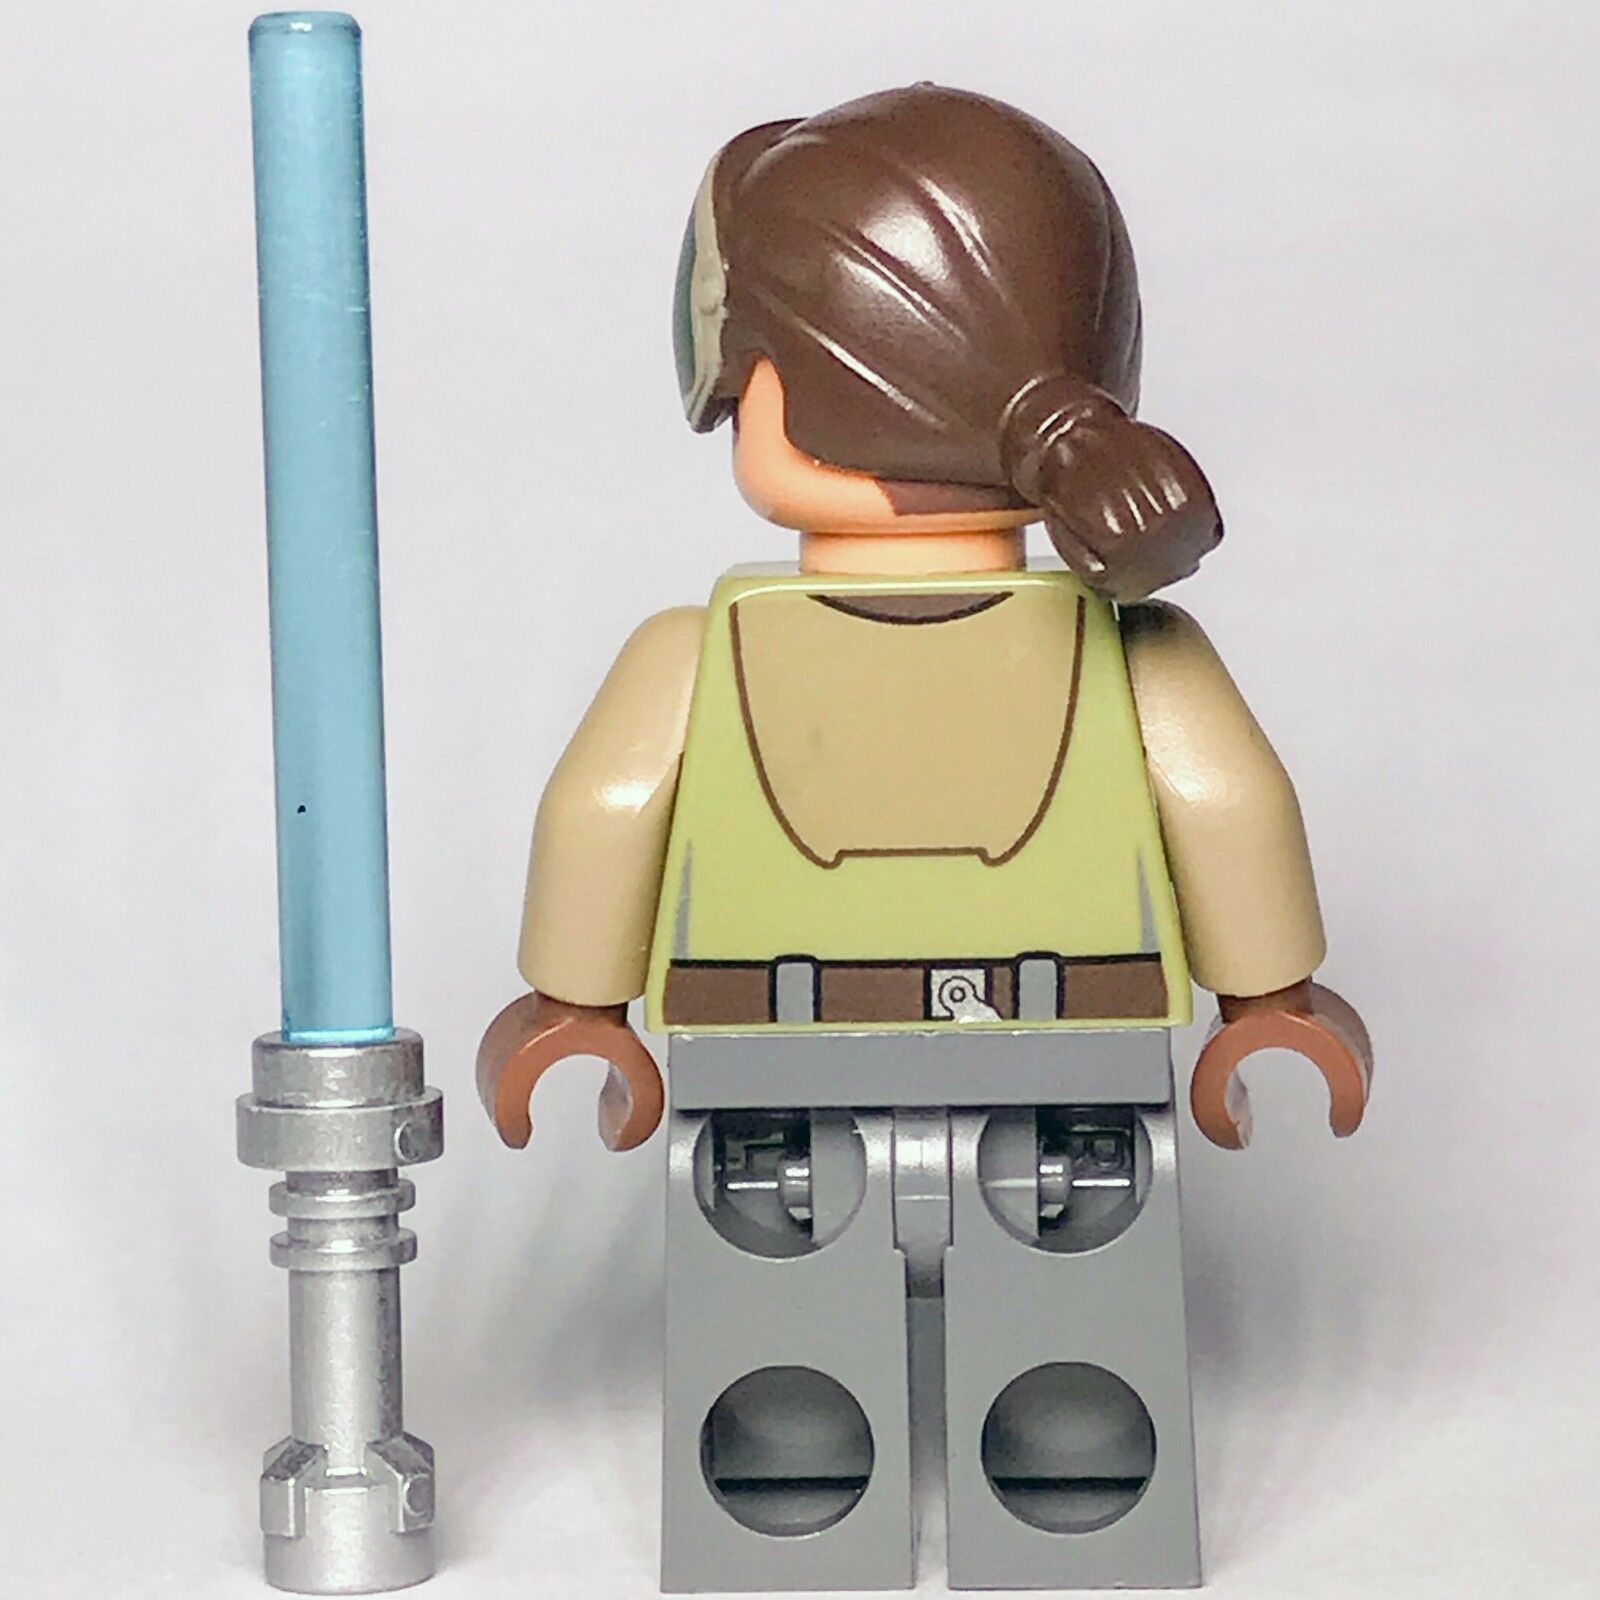 New Star Wars LEGO Kanan Jarrus "Blind" Rebels Jedi Knight Minifigure 75170 - Bricks & Figures